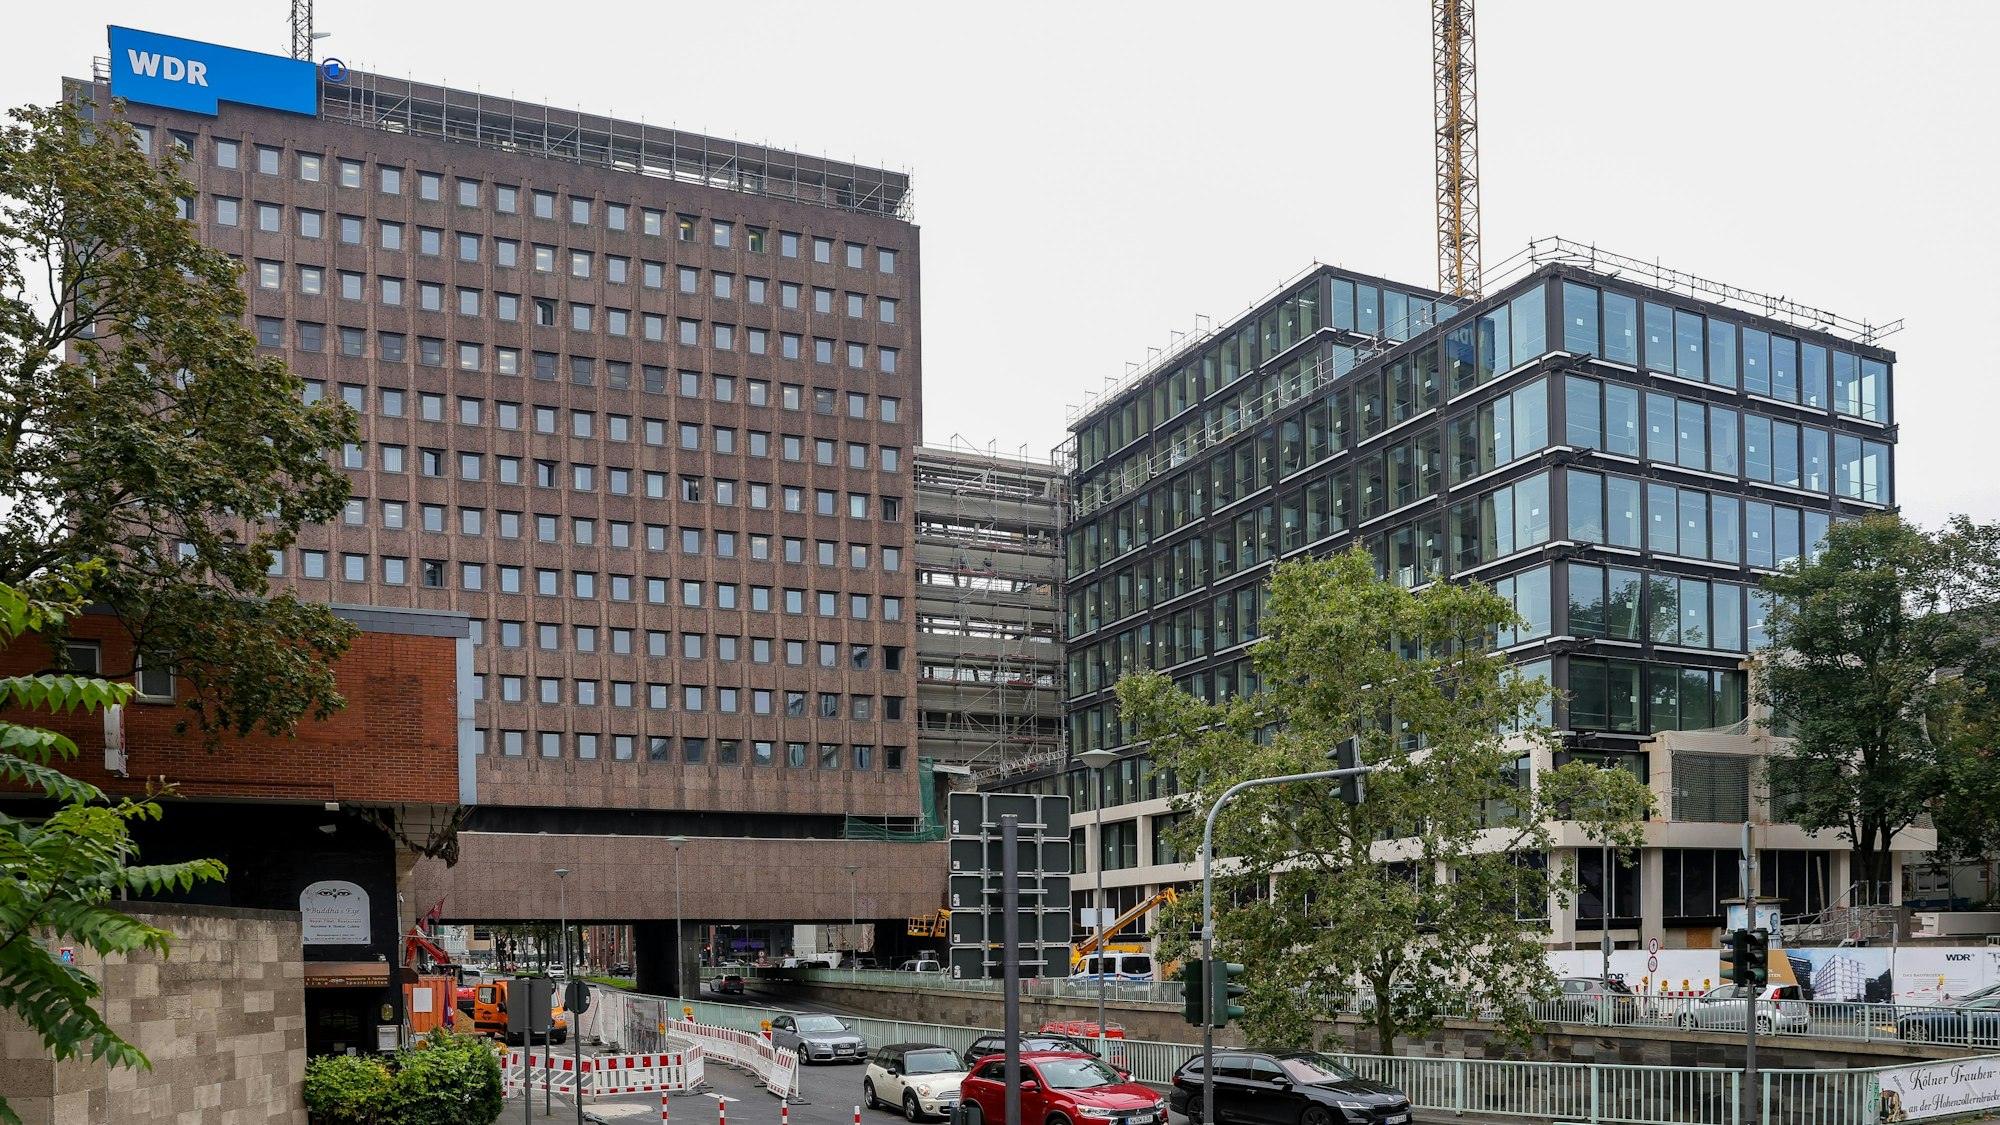 16.08.2023, Köln: Die Baustelle des WDR-Filmhaus an der Nord-Süd-Fahrt.

Foto: Michael Bause